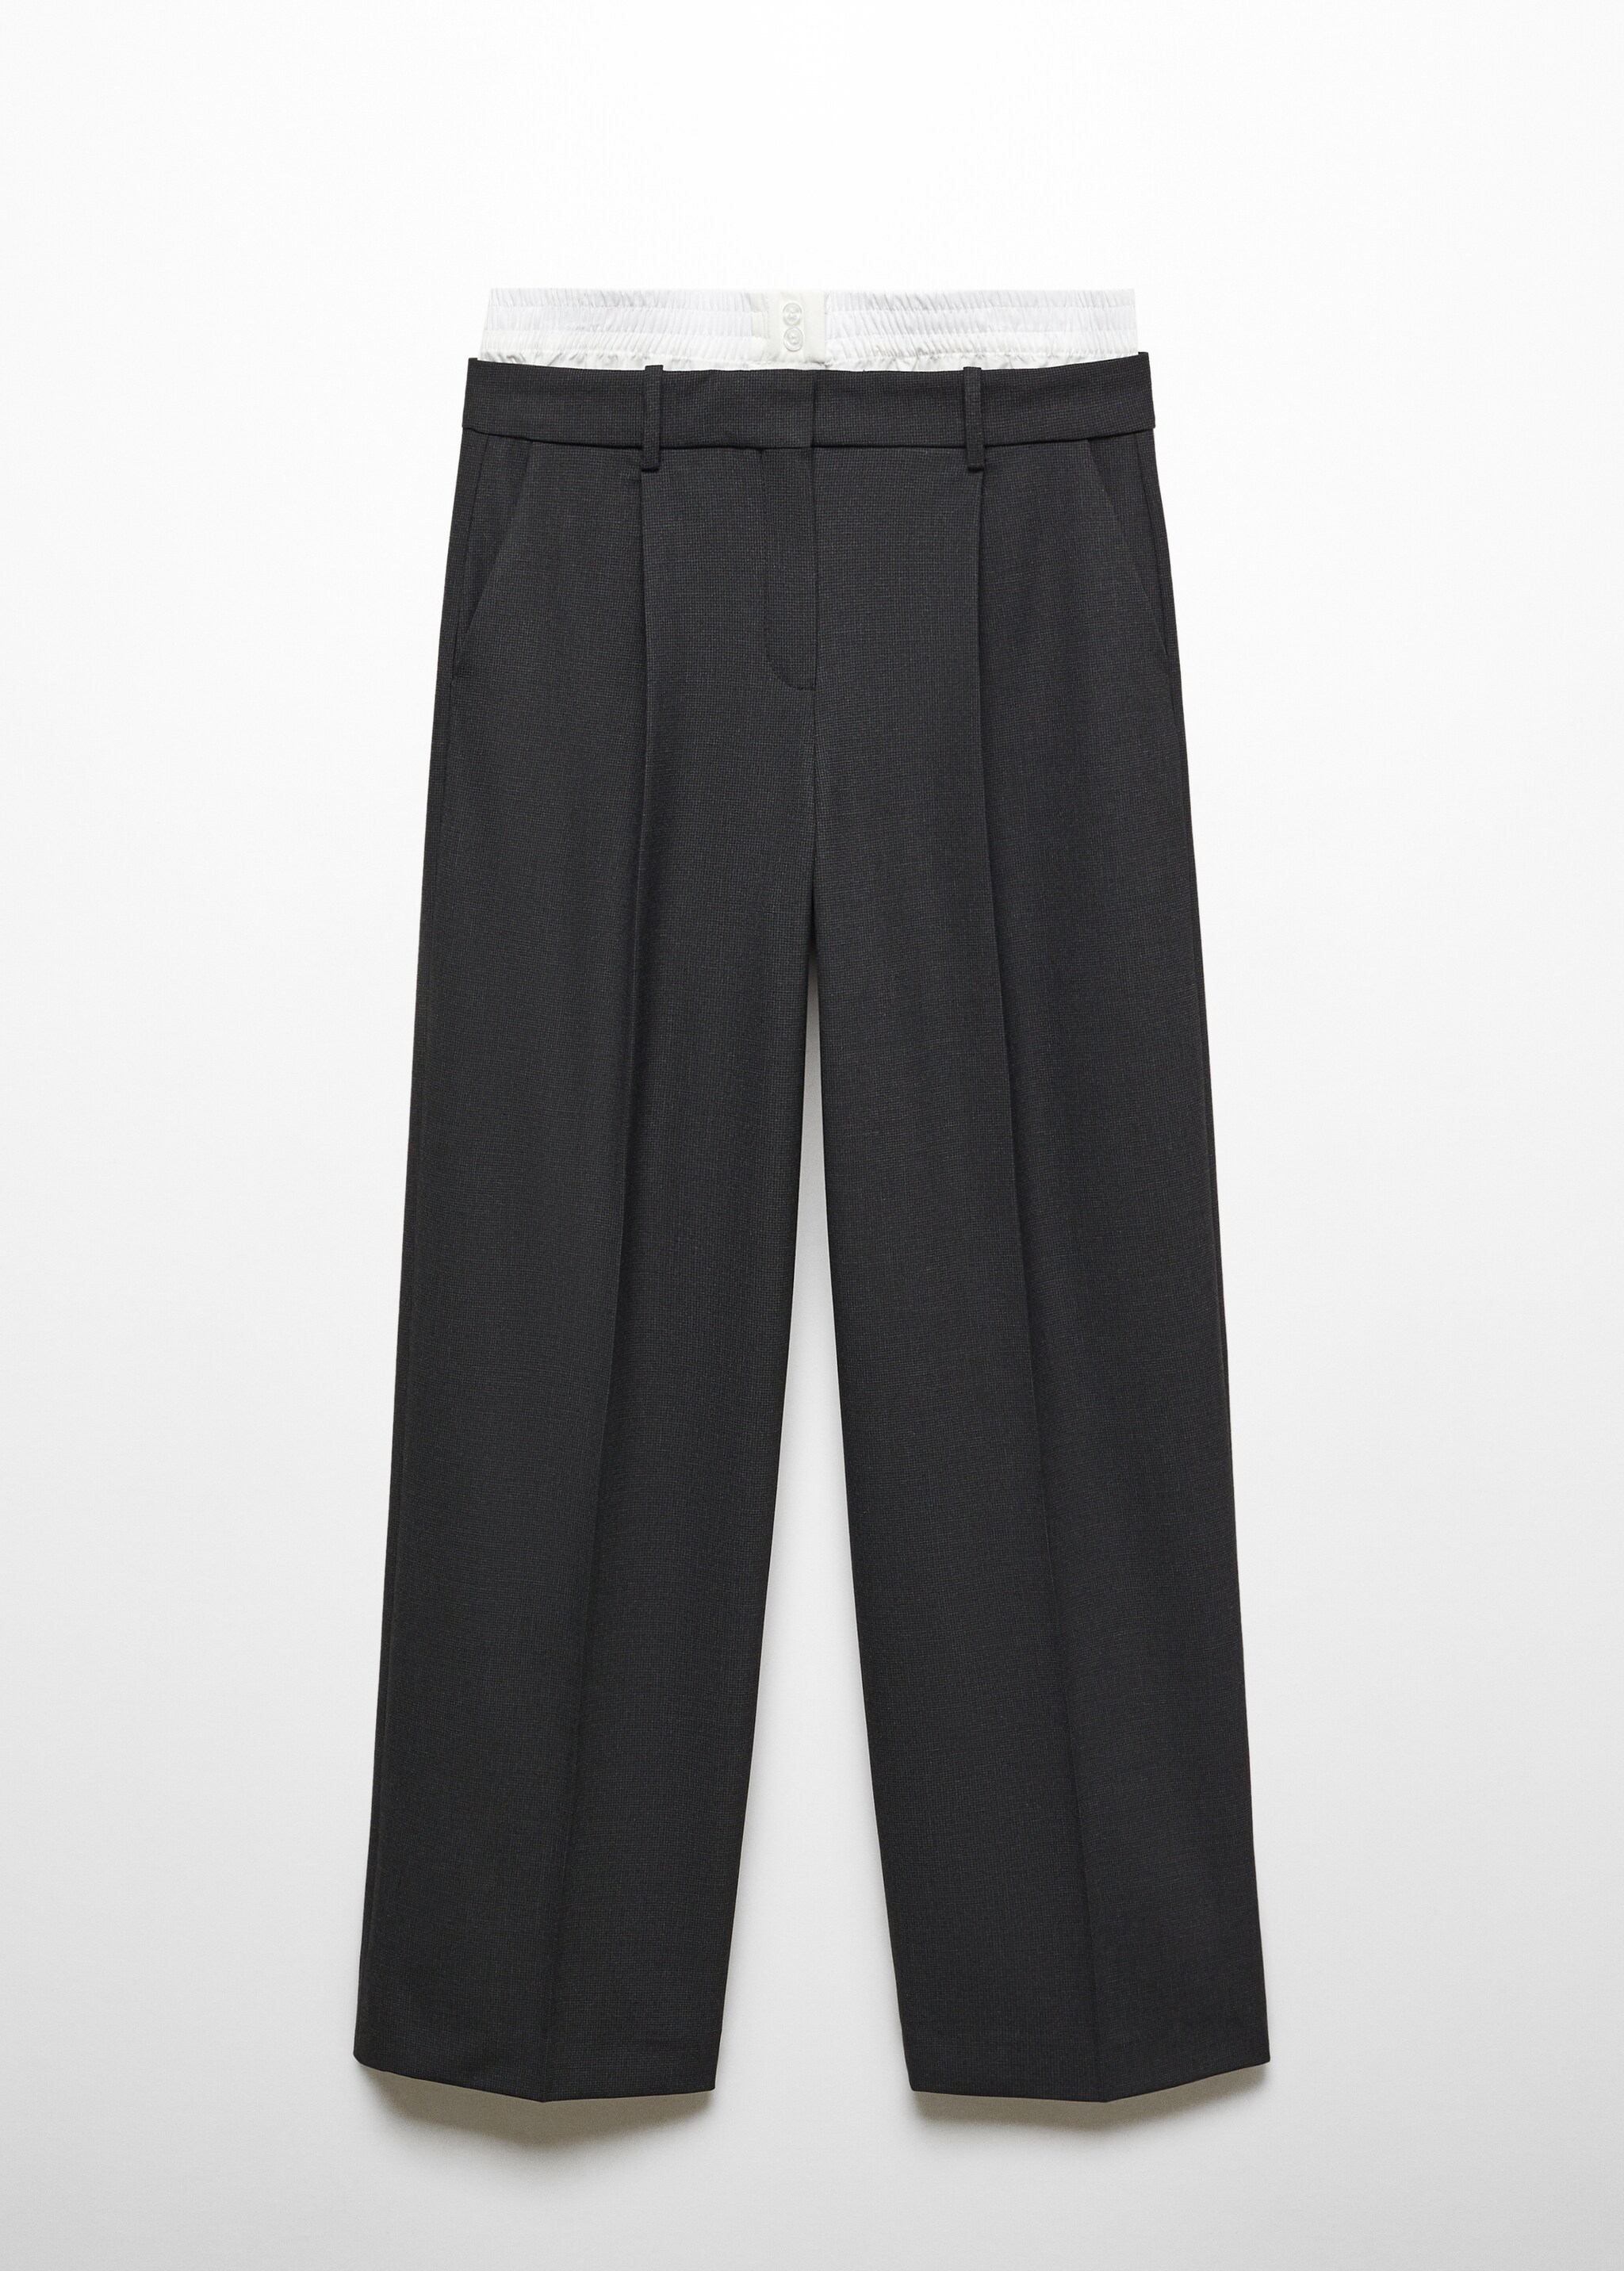 Çift bel düz kesim pantolon - Modelsiz ürün